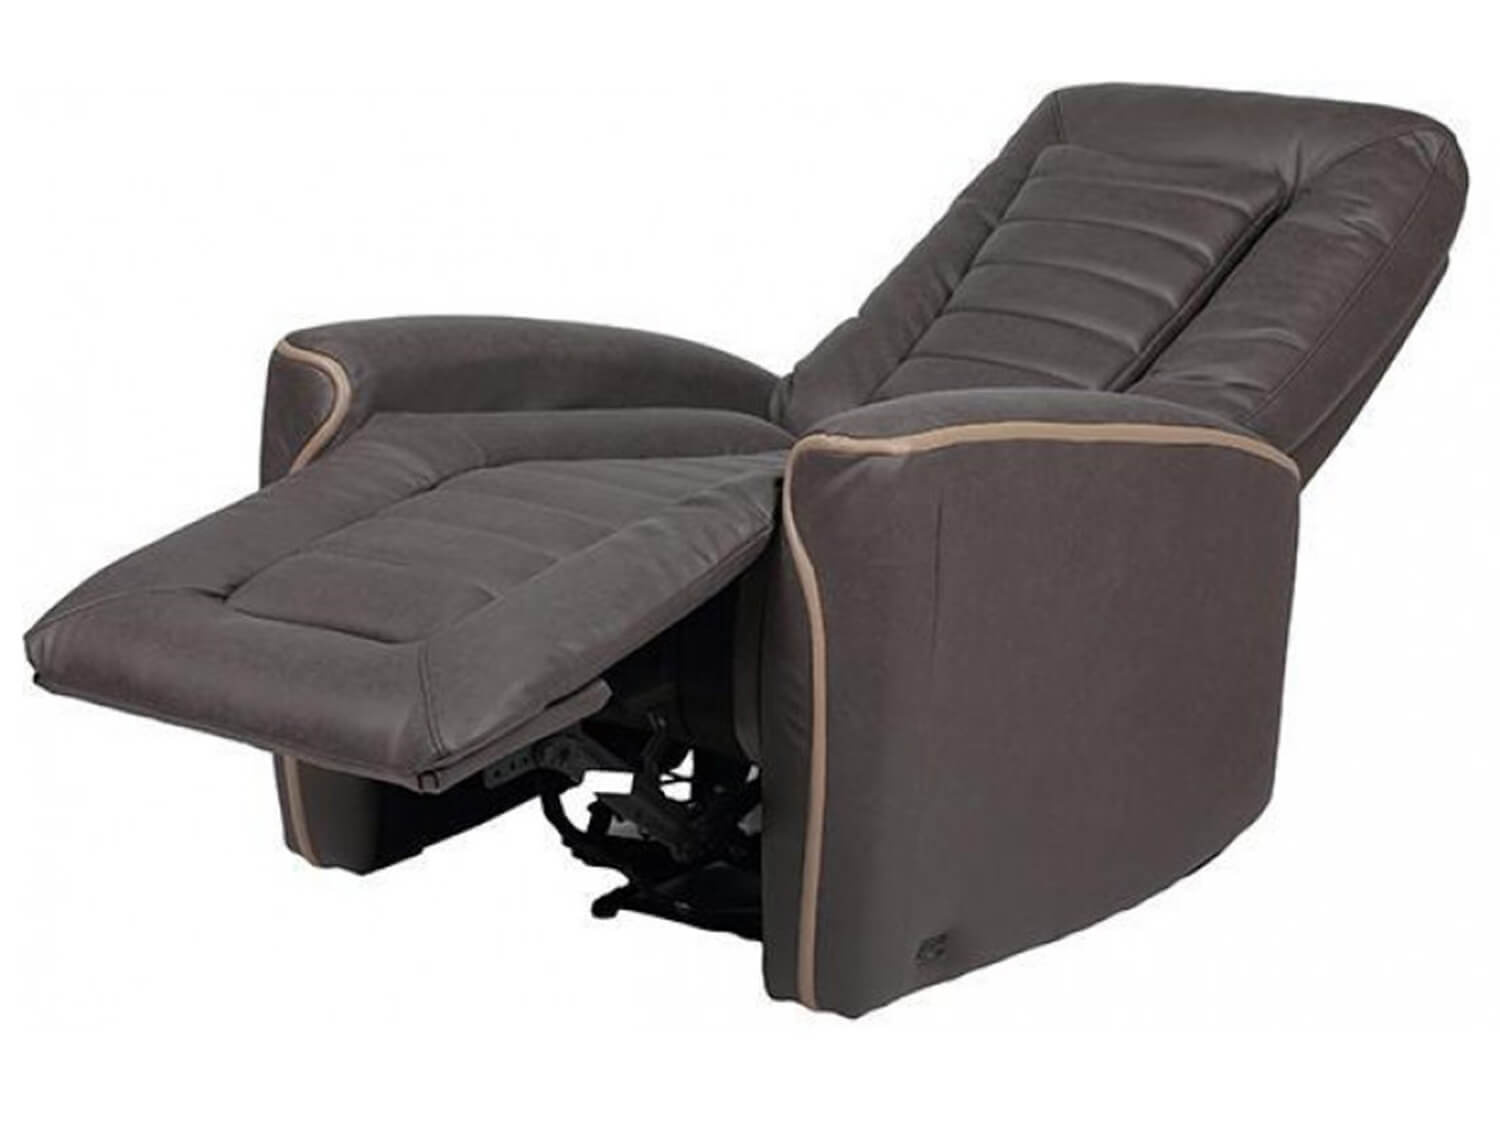 EGO Recline Chair 3001 Серый цвет - серый